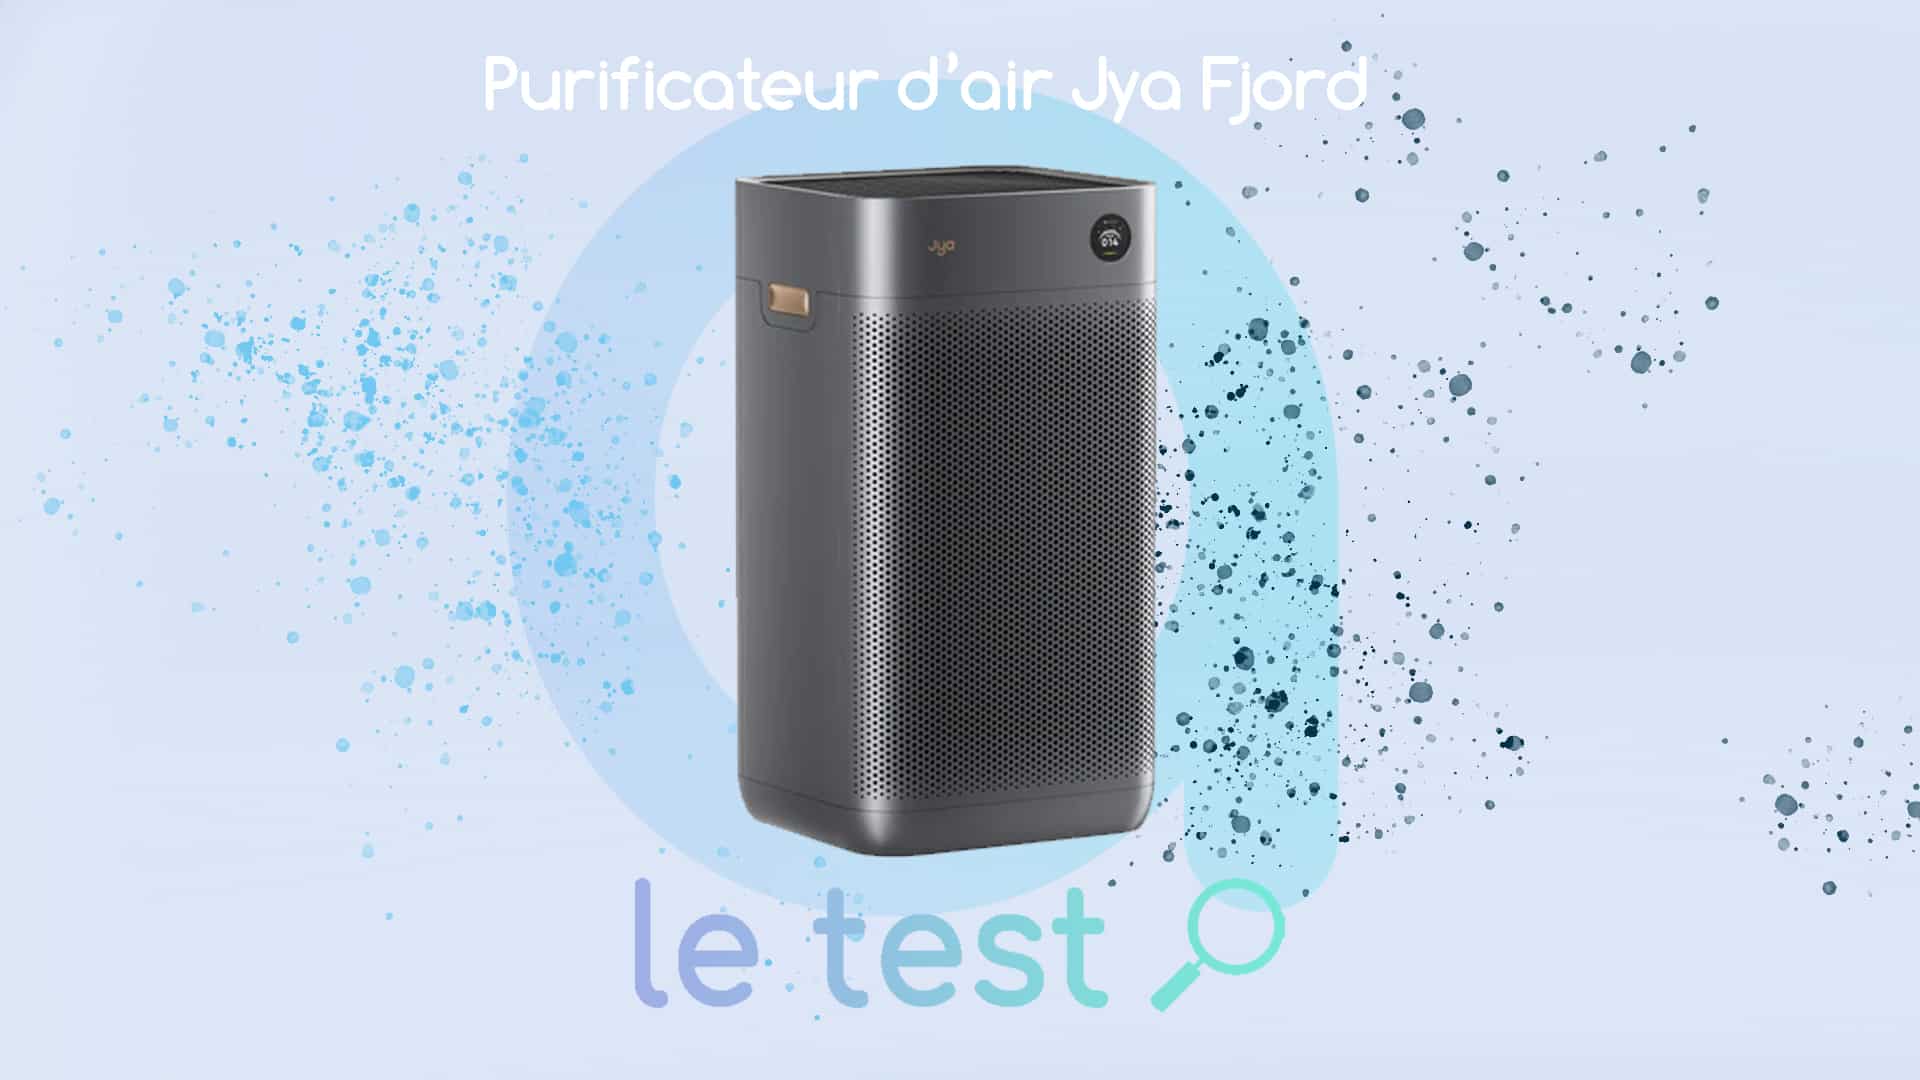 Jumelage de la compétence Alexa au purificateur d'air